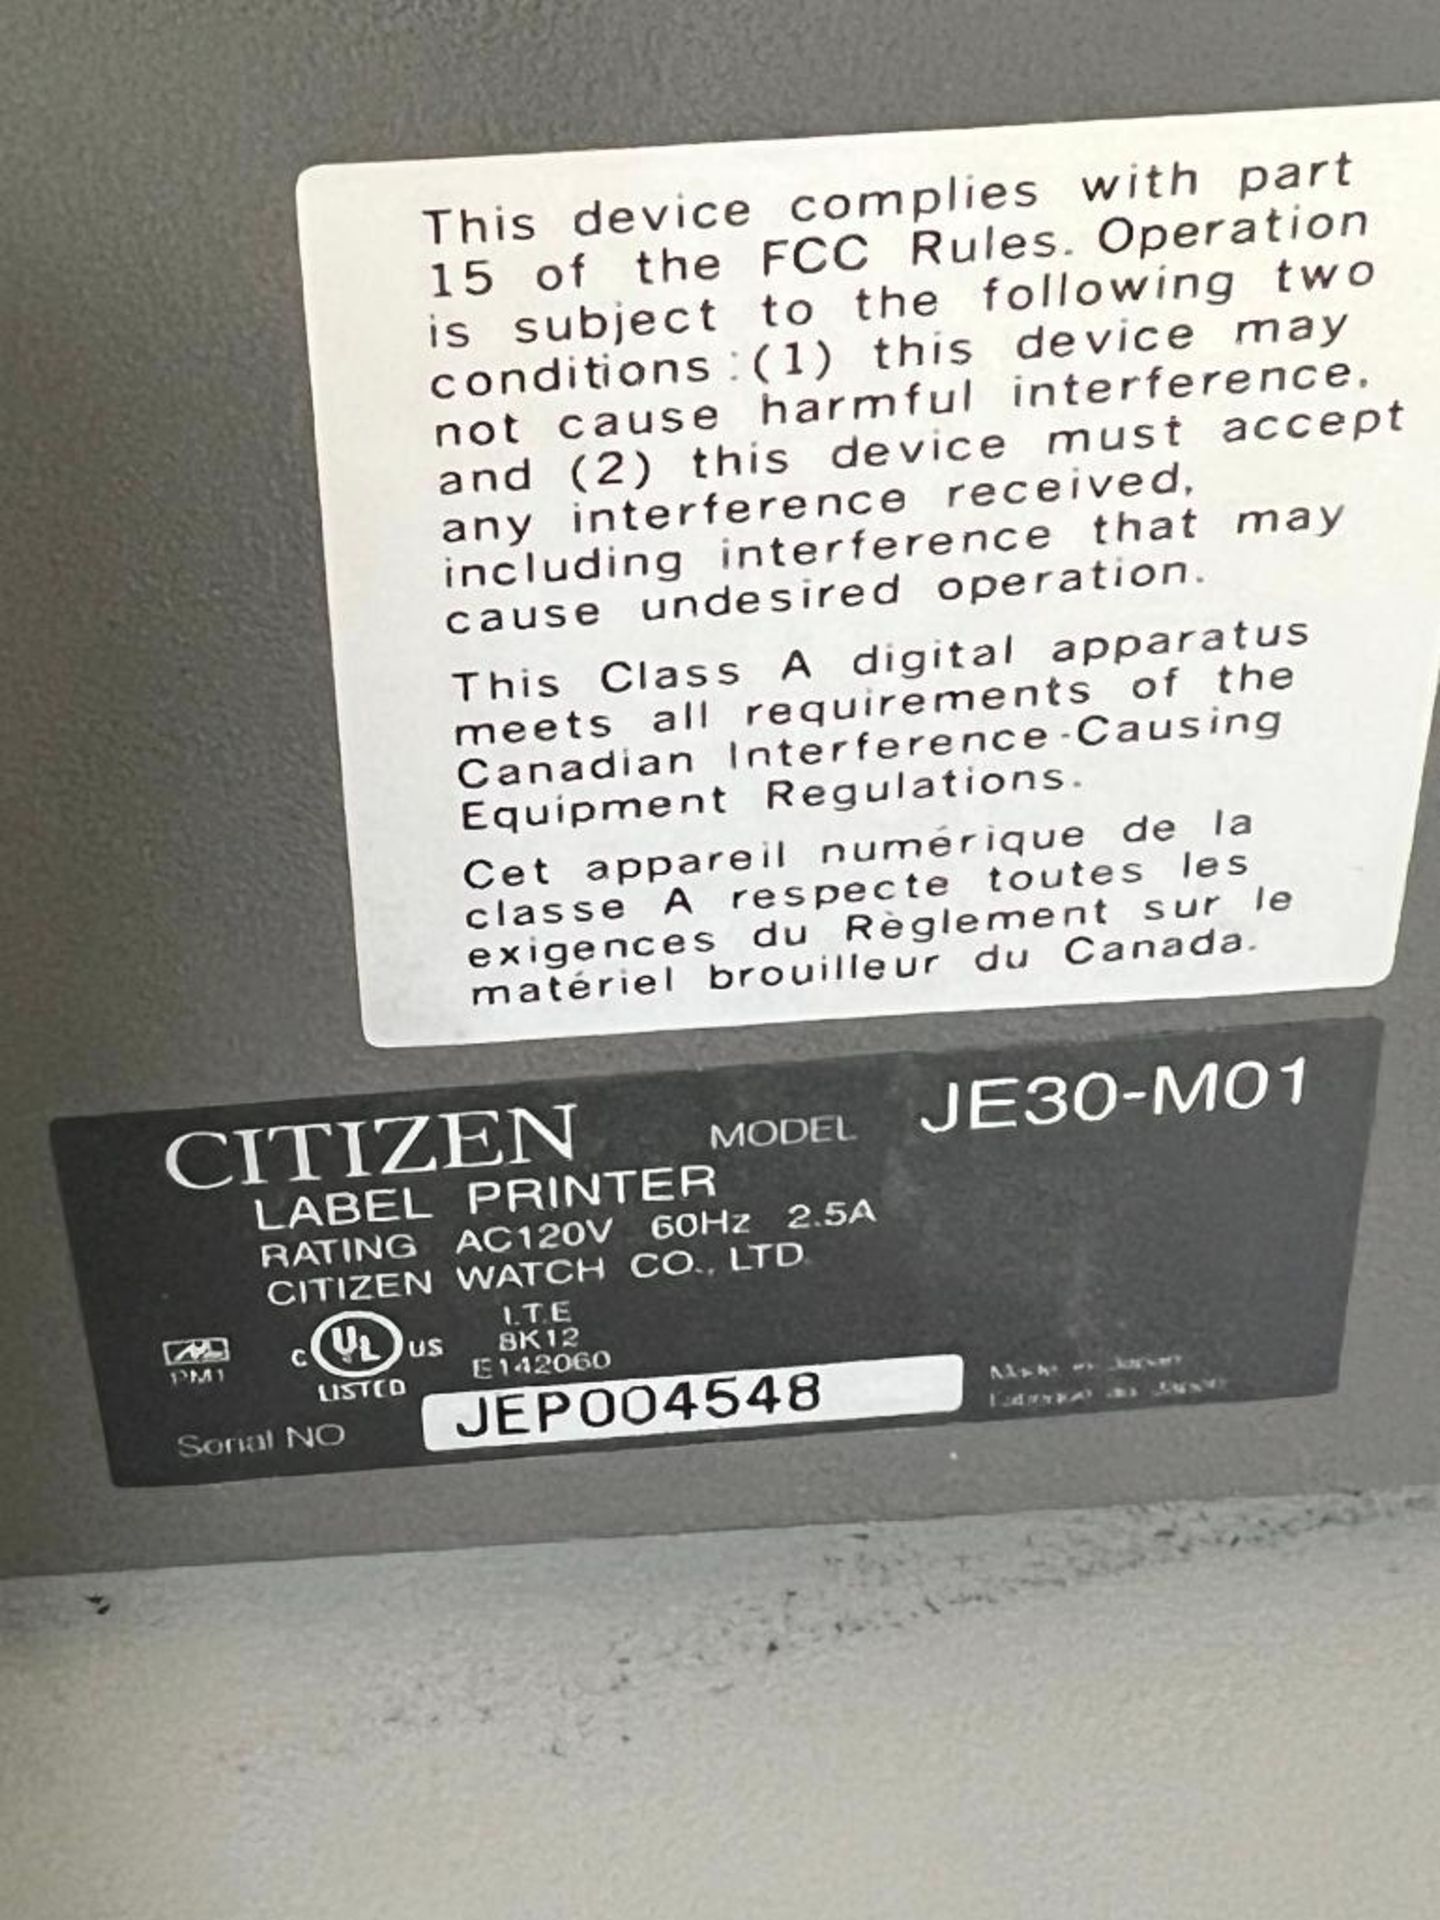 Citizen Label Printer, Model JE30-M01, S/N JEP004548 - Image 3 of 3